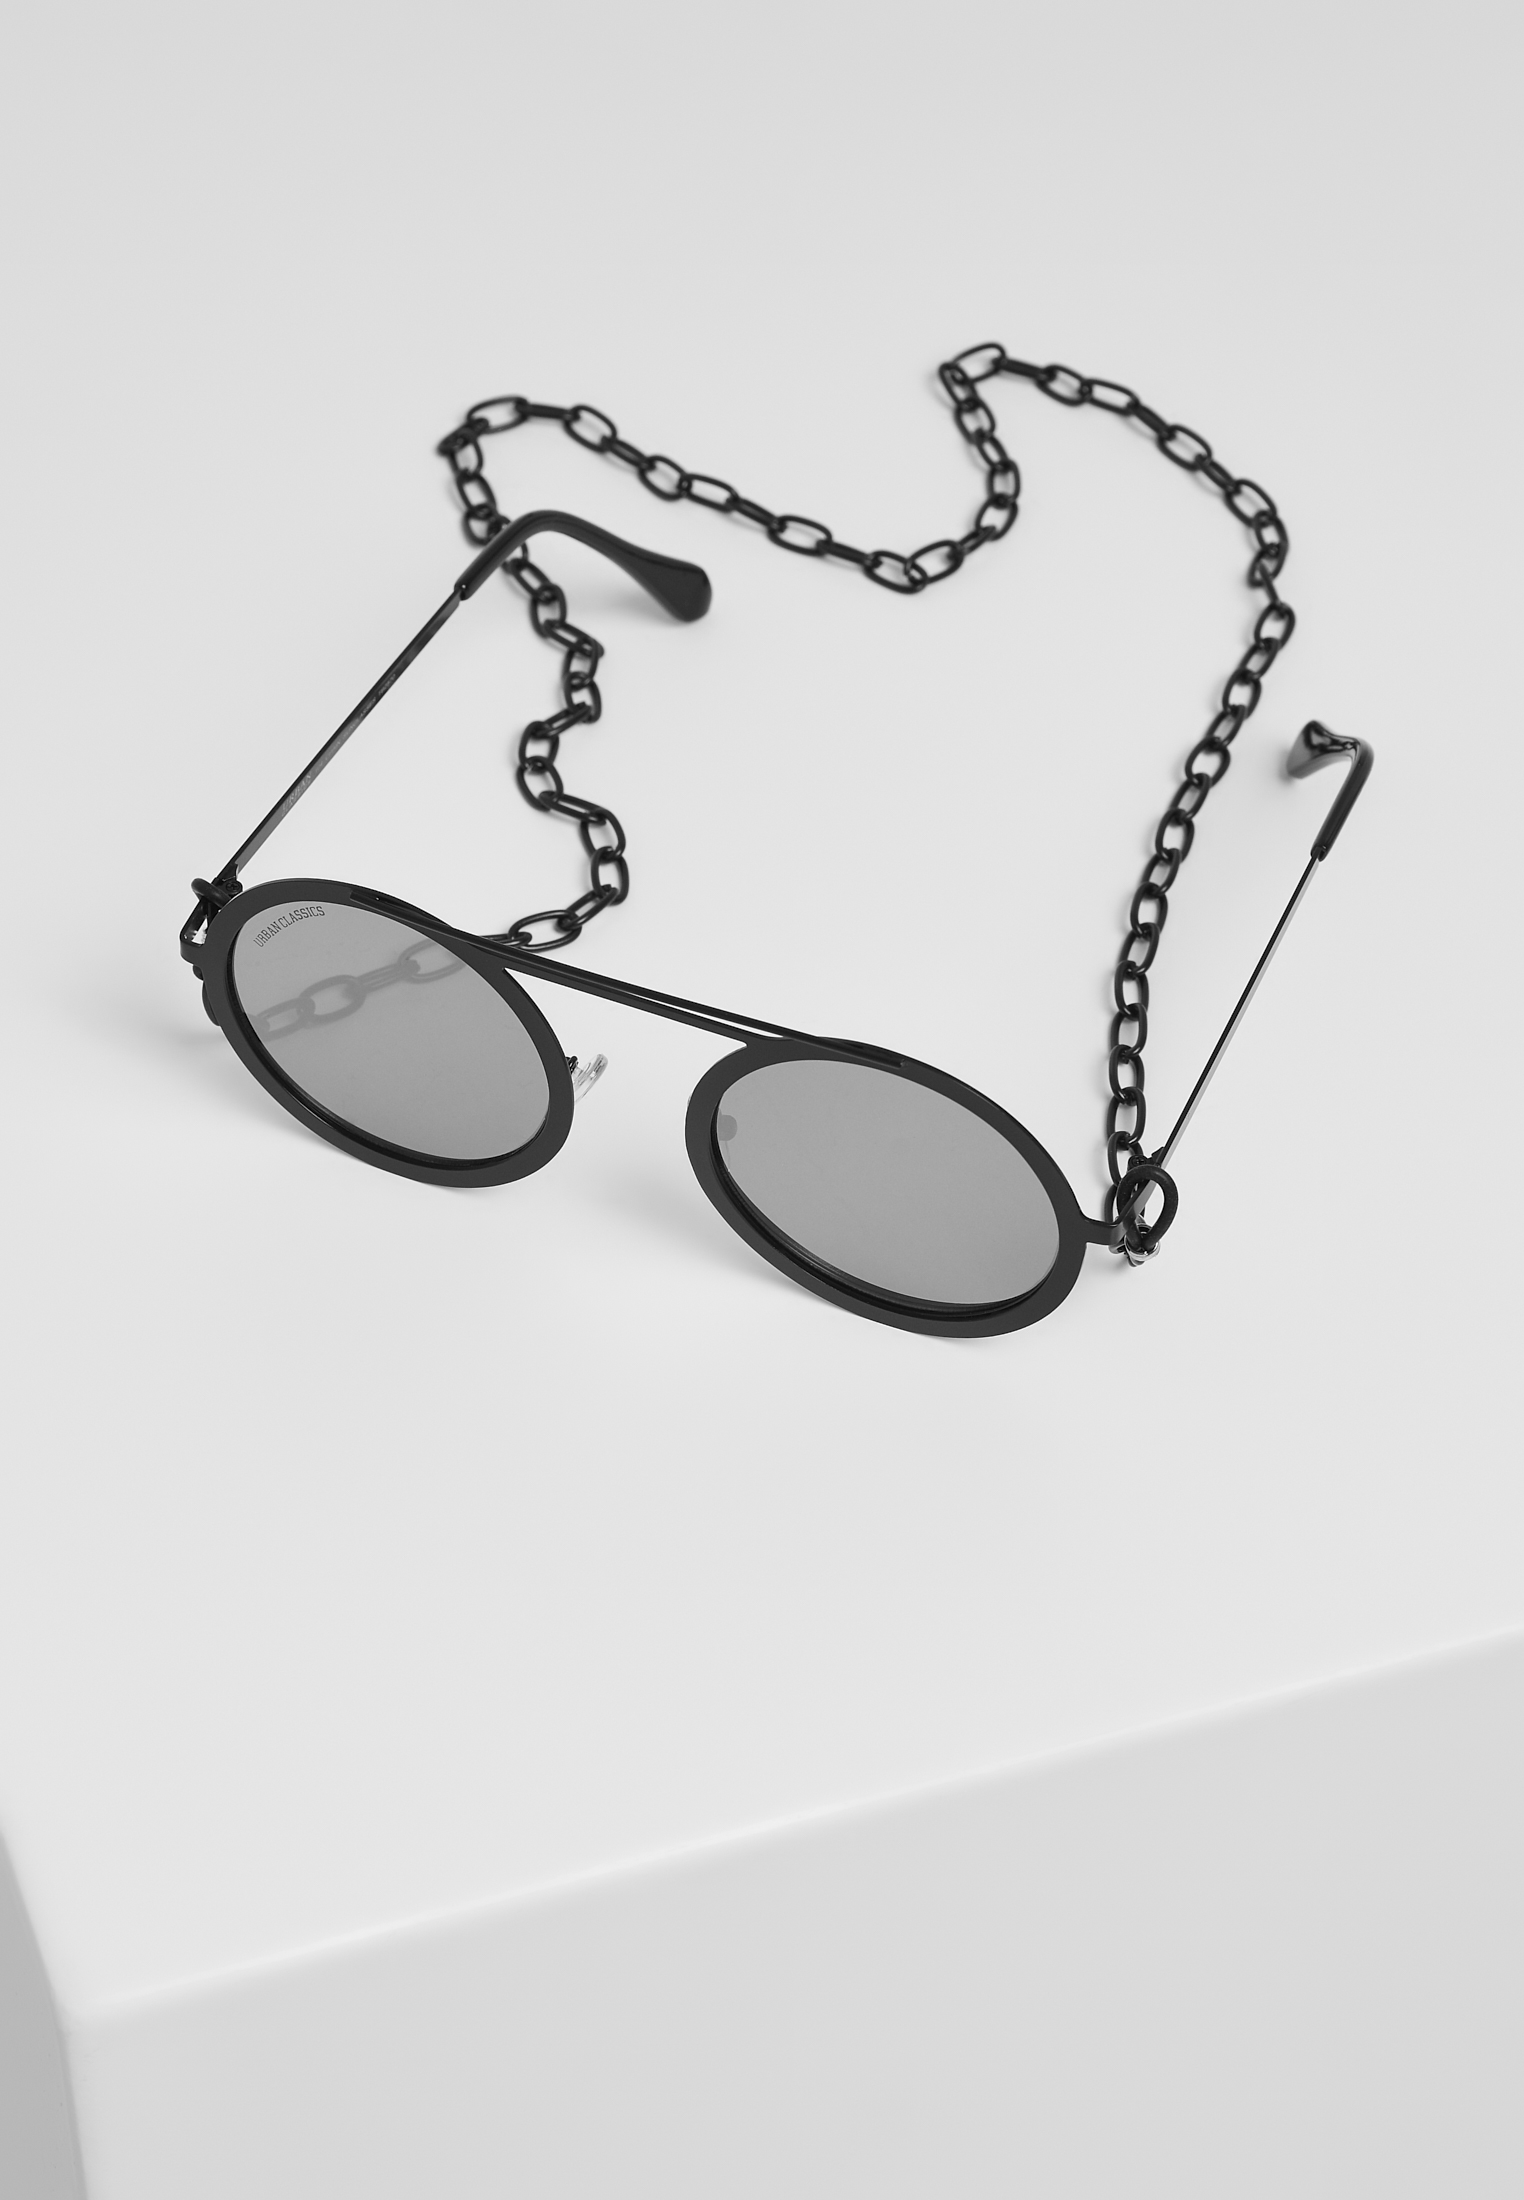 Sonnenbrillen 104 Chain Sunglasses in Farbe silver mirror/black